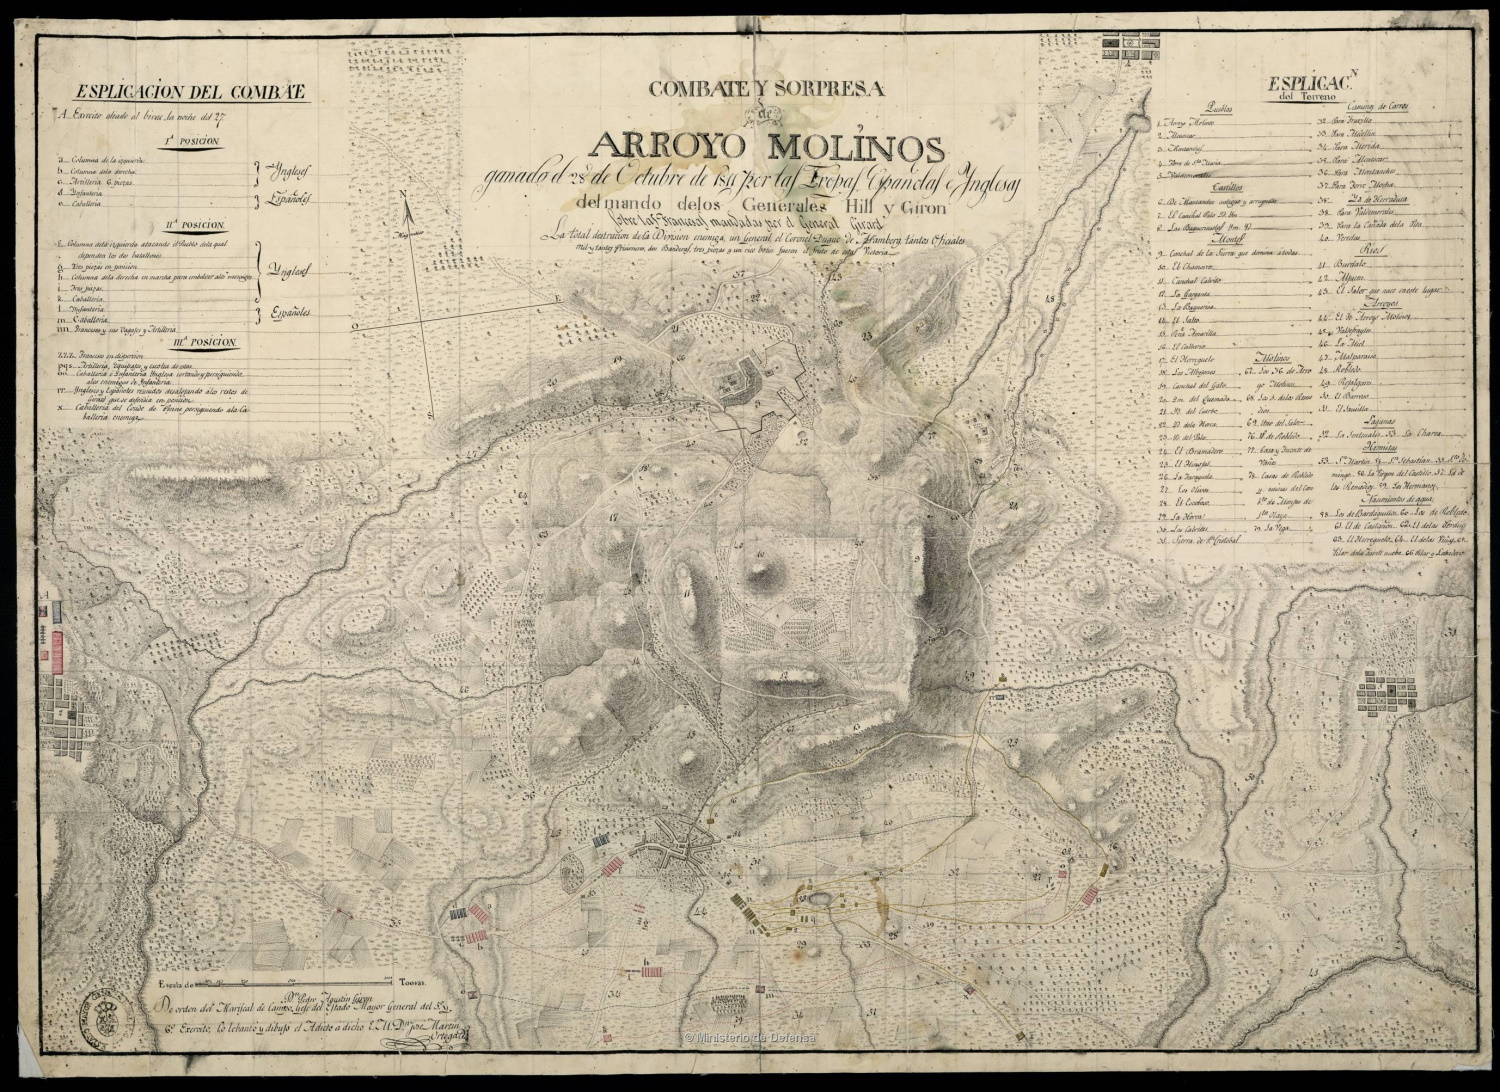 Combate y sorpresa de Arroyo Molinos : ganado el 28 de Octubre de 1811 por las Tropas Españolas [...